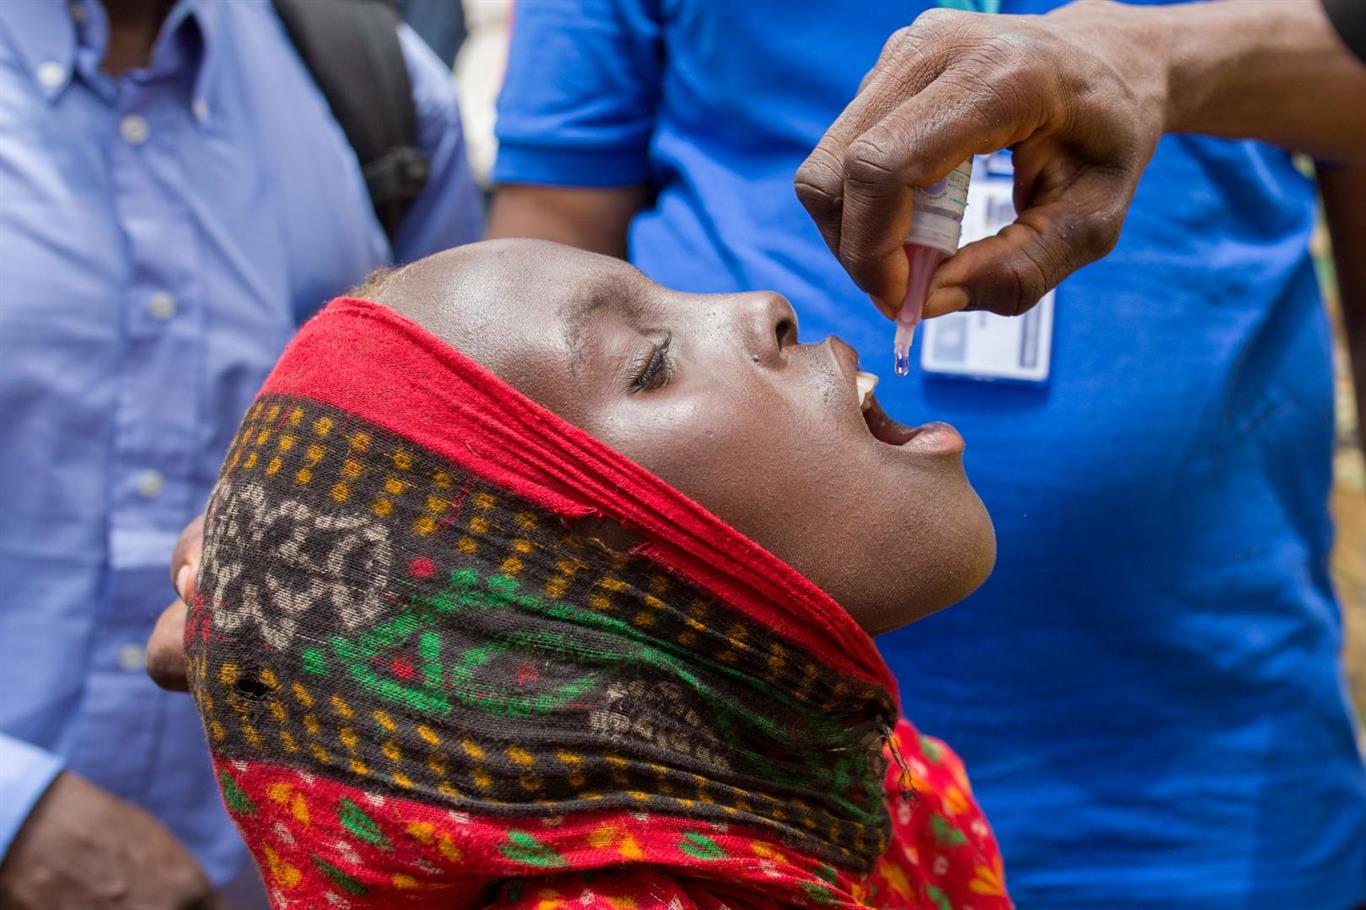 La Iniciativa de erradicación mundial de la poliomielitis aplaude a la Región de África de la OMS por obtener la certificación de ausencia de poliomielitis salvaje